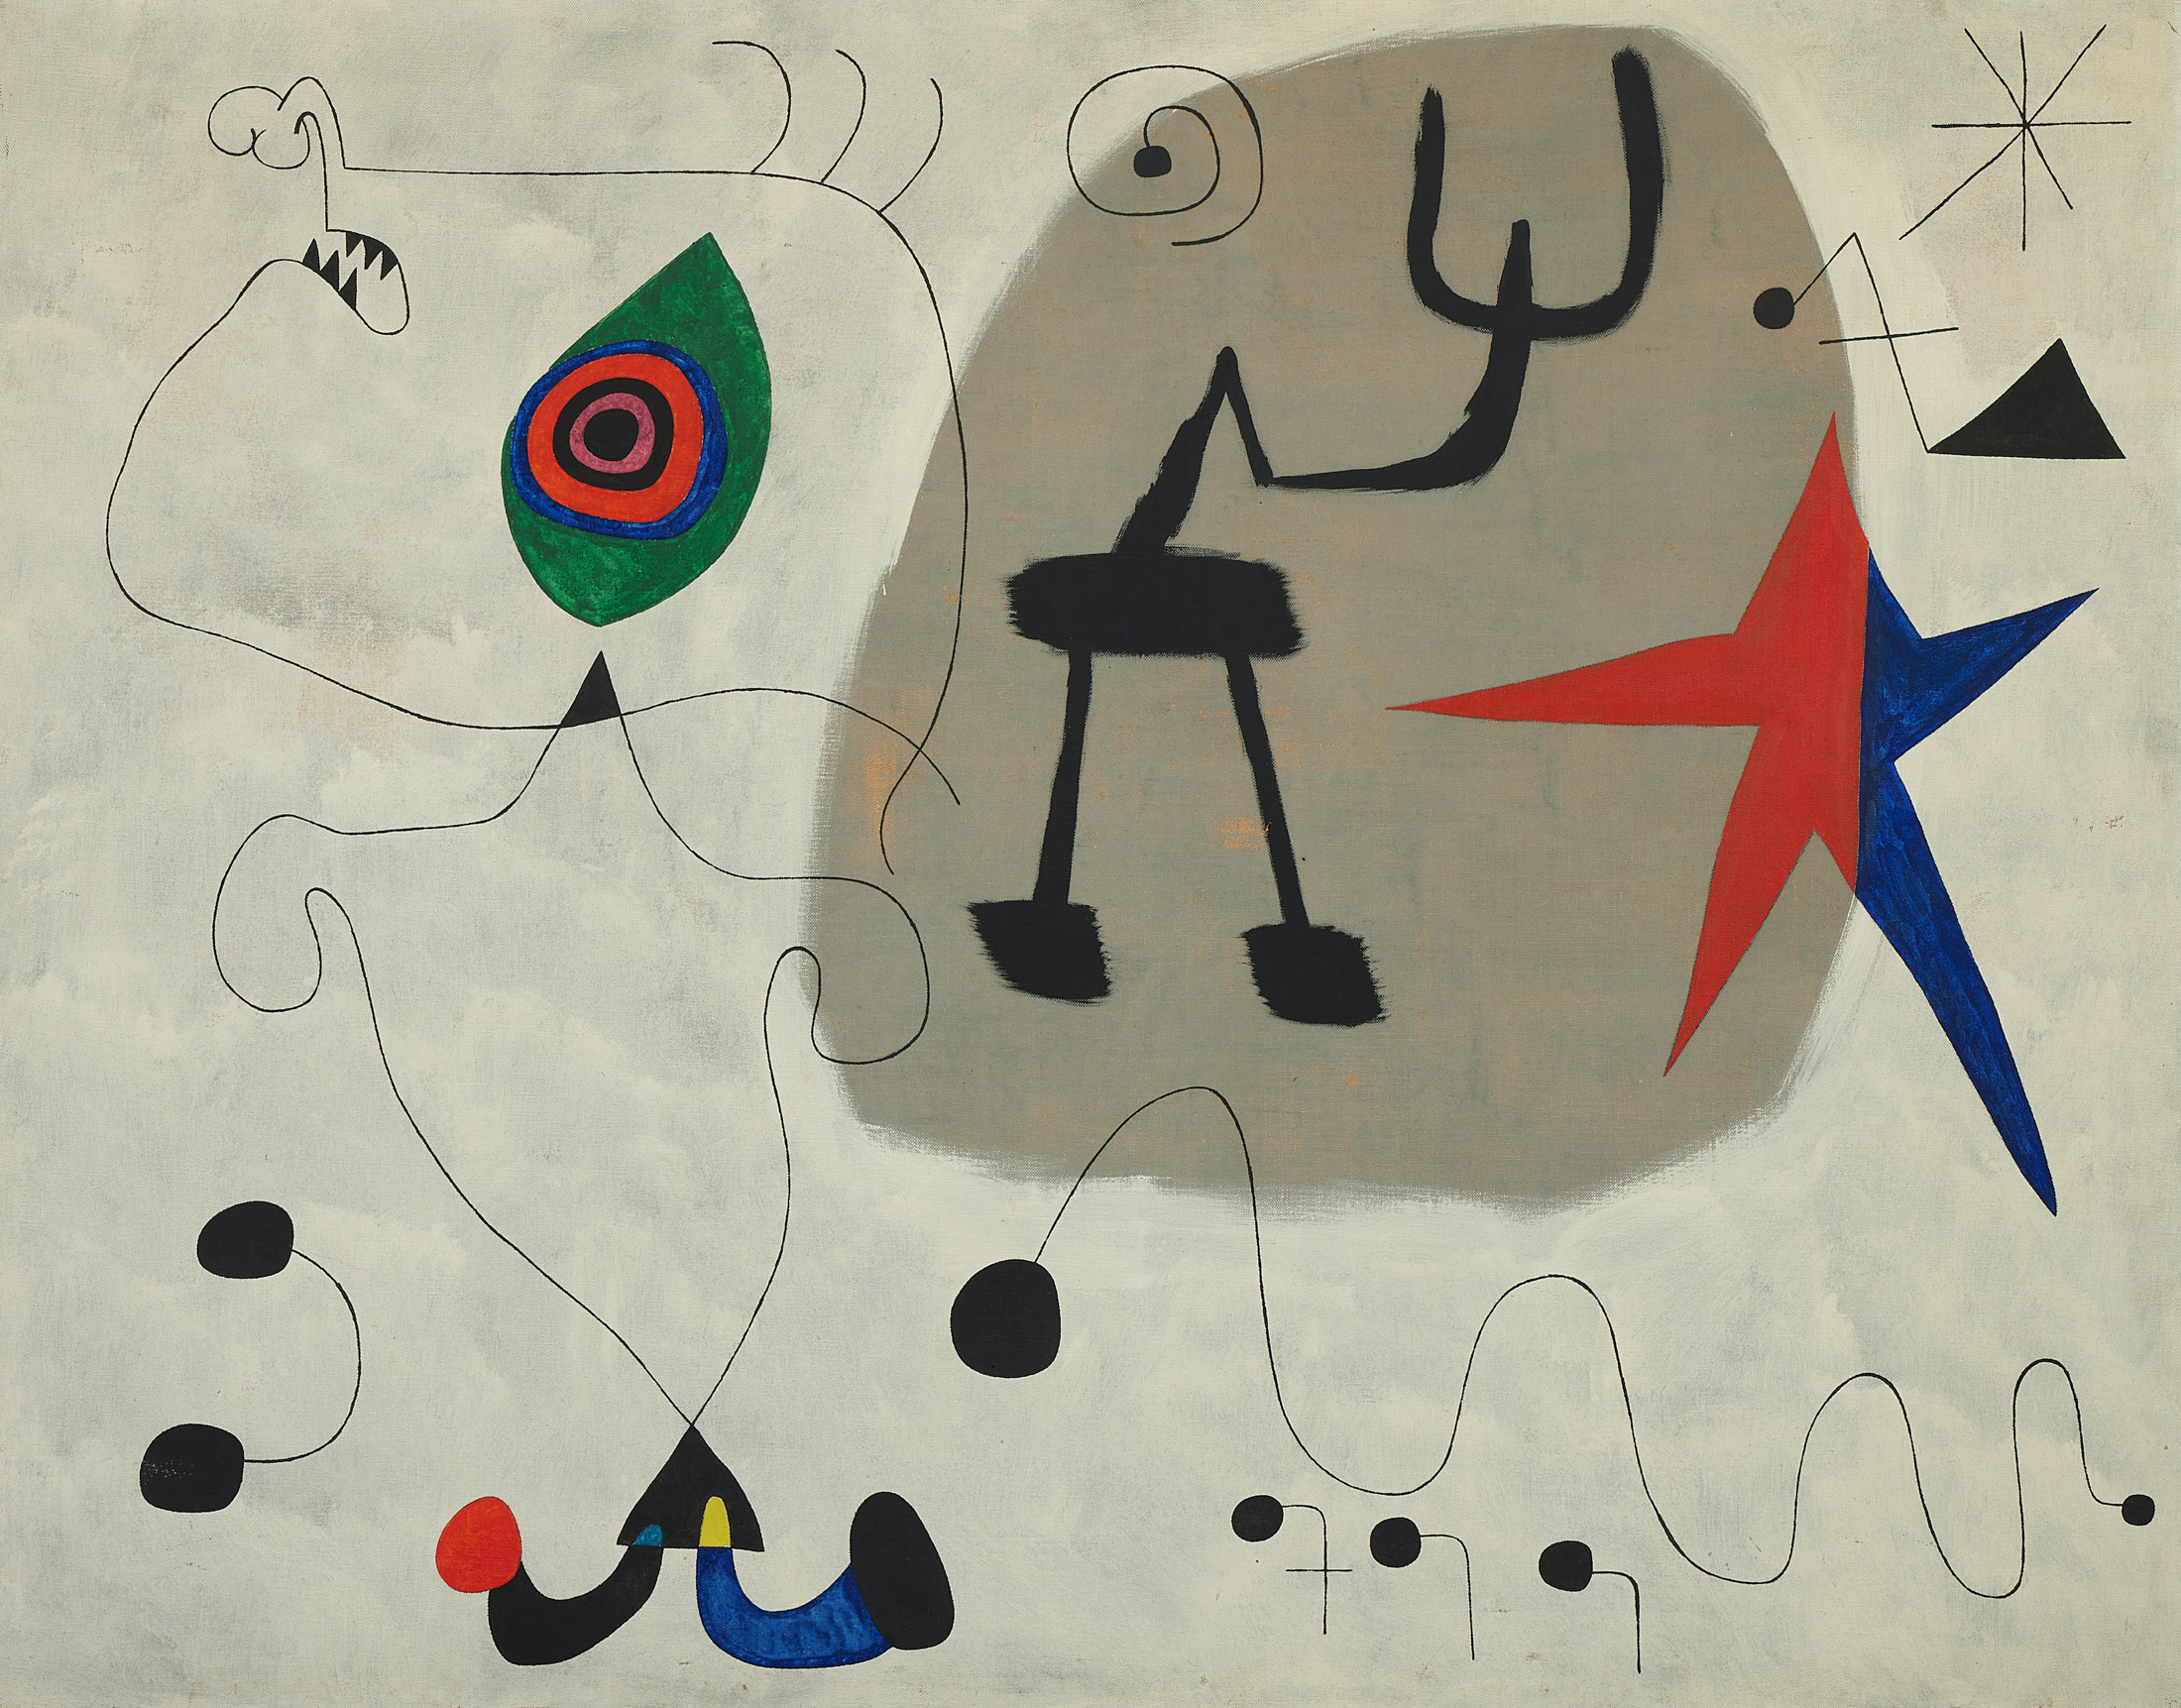 Joan Miró’s&nbsp;Femme, Étoiles&nbsp;from 1945.